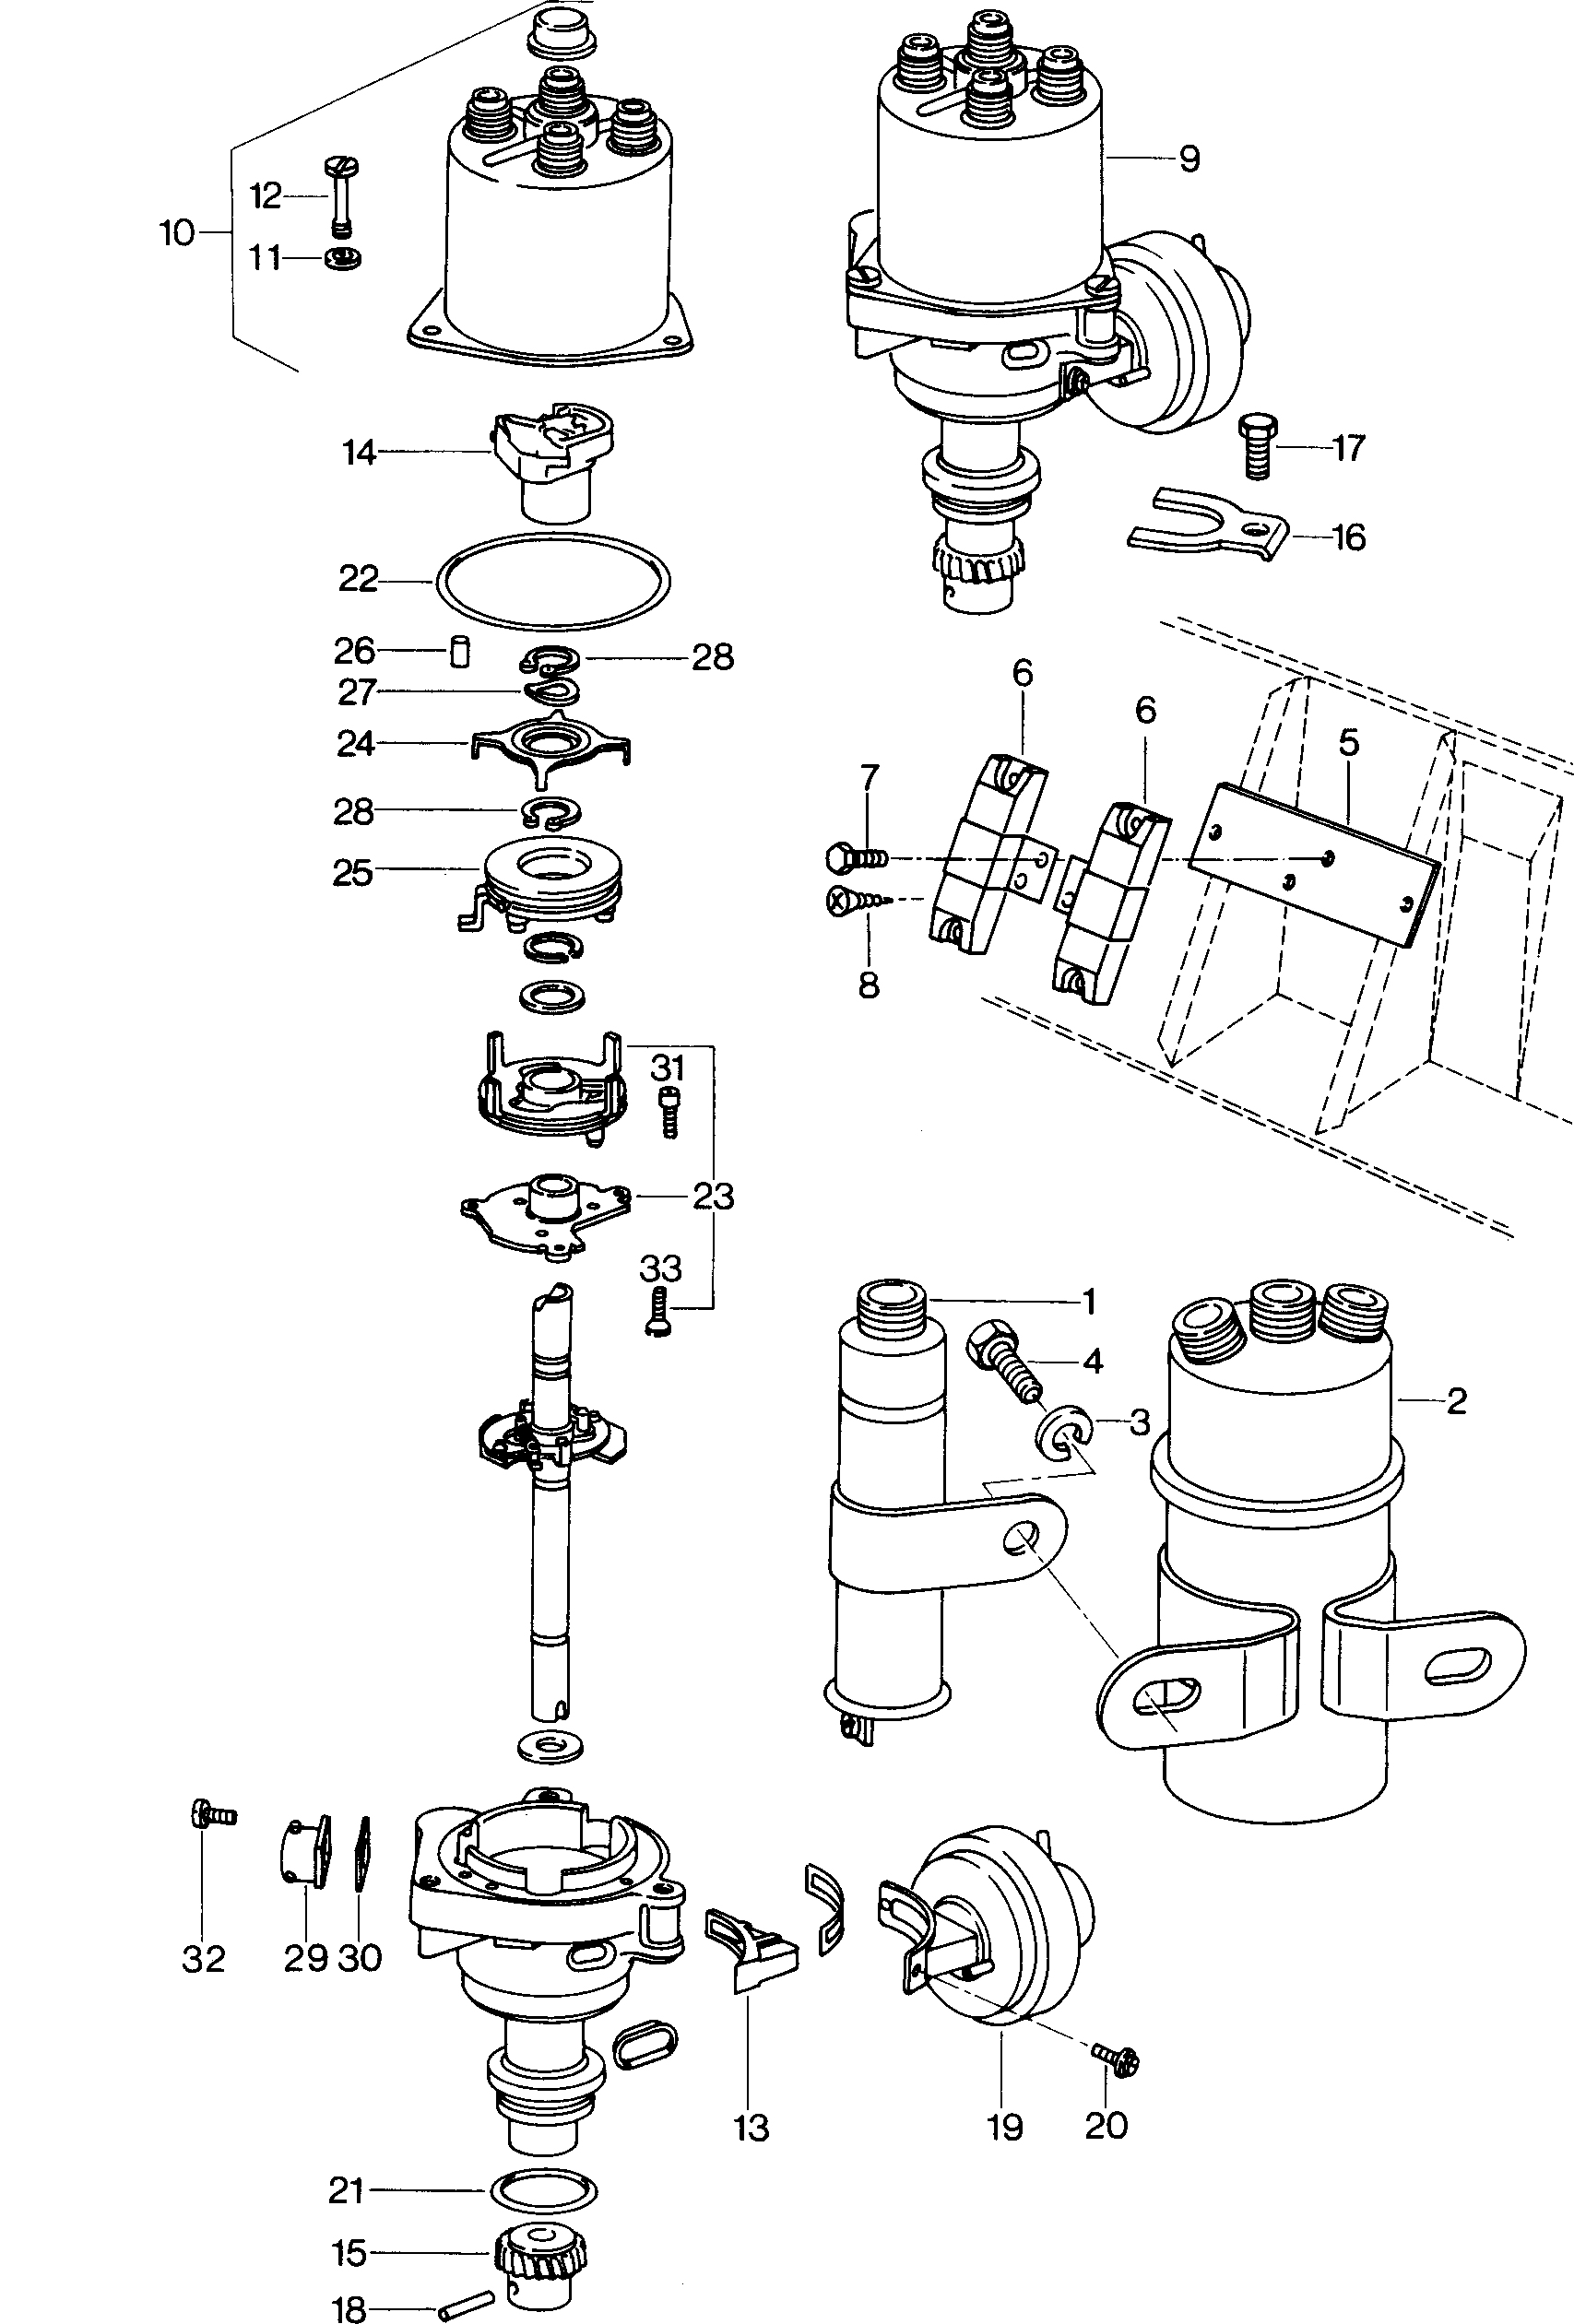 Zuendspule; Zuendverteiler - Mod.181 / Iltis(ILT)  